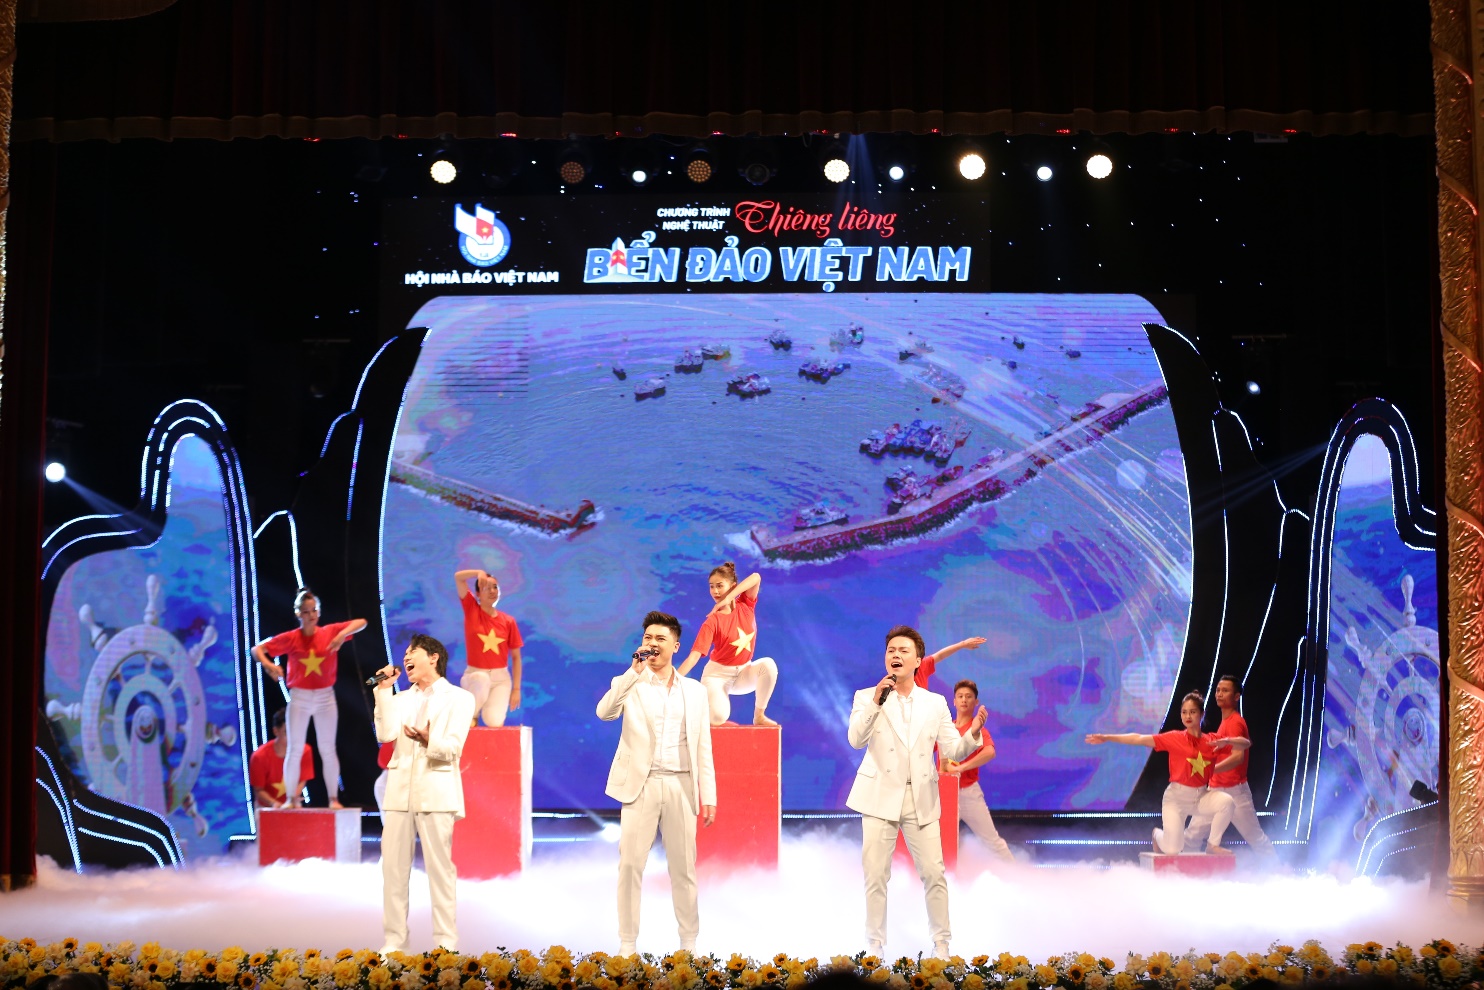 Tổ quốc nhìn từ biển - Thơ: Nguyễn Việt Chiến - Nhạc: Quỳnh Hợp, biểu diễn: Đinh Quang Đạt, Xuân Sơn, Quang Vinh